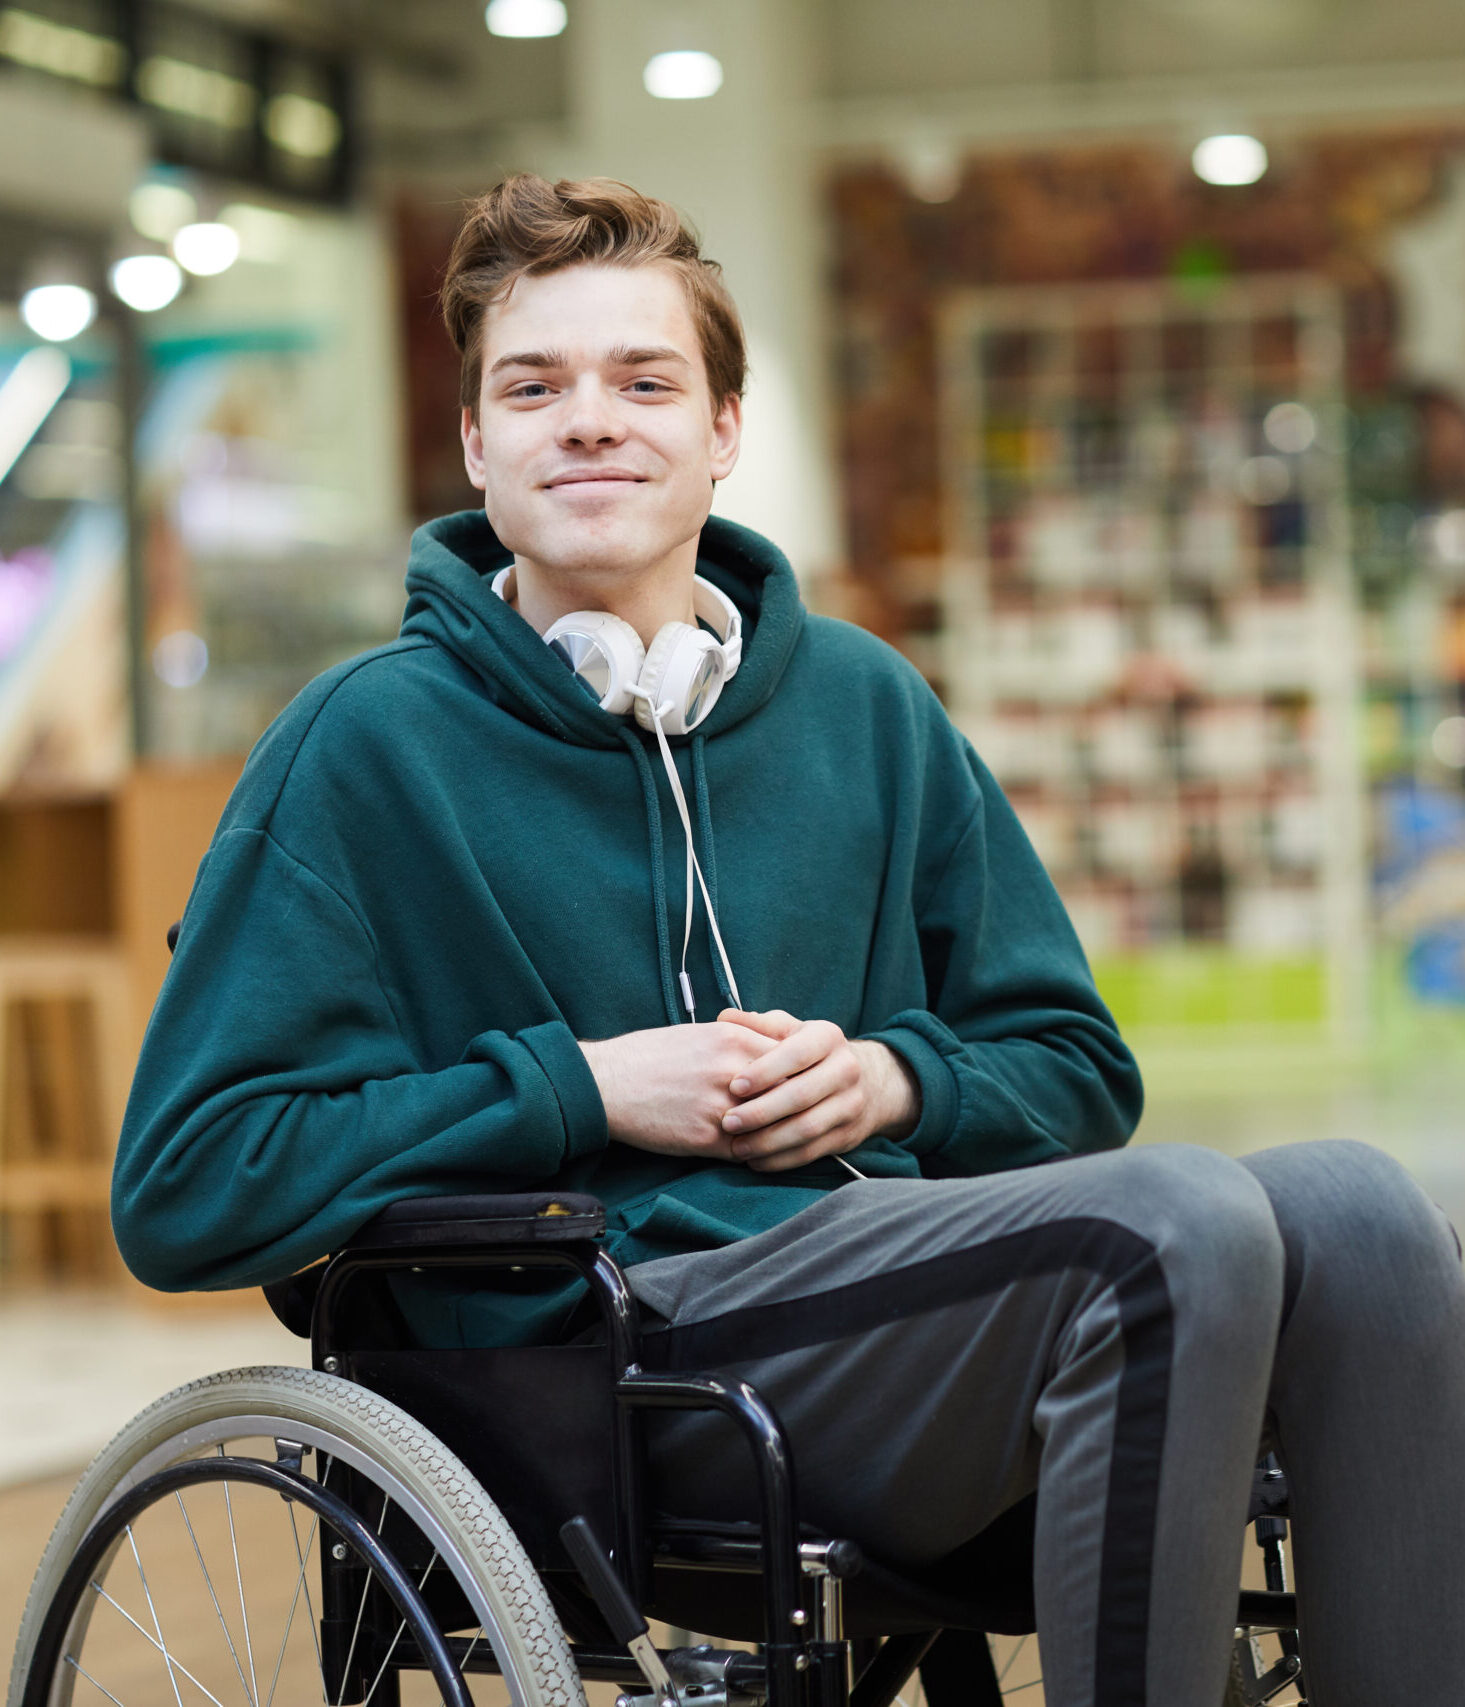 Uśmiechnięty niepełnosprawny student na wózku inwalidzkim.